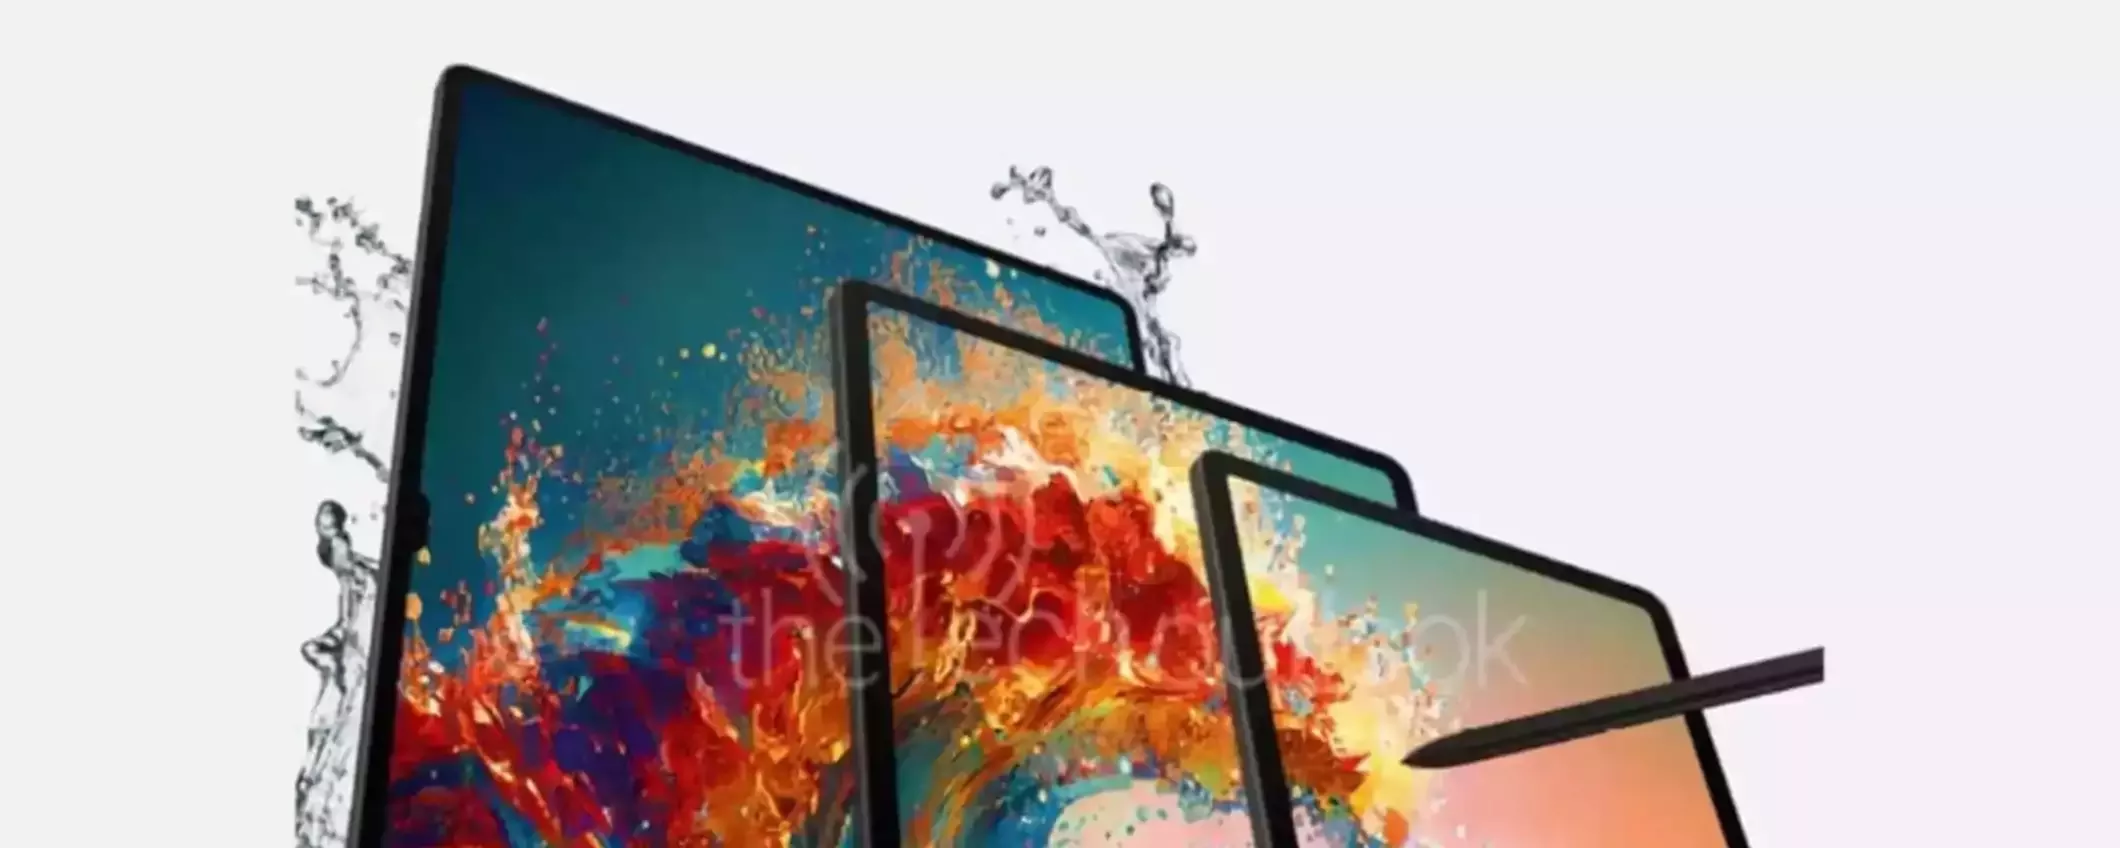 Samsung Galaxy Tab S9+: un concentrato di potenza a soli 1030€